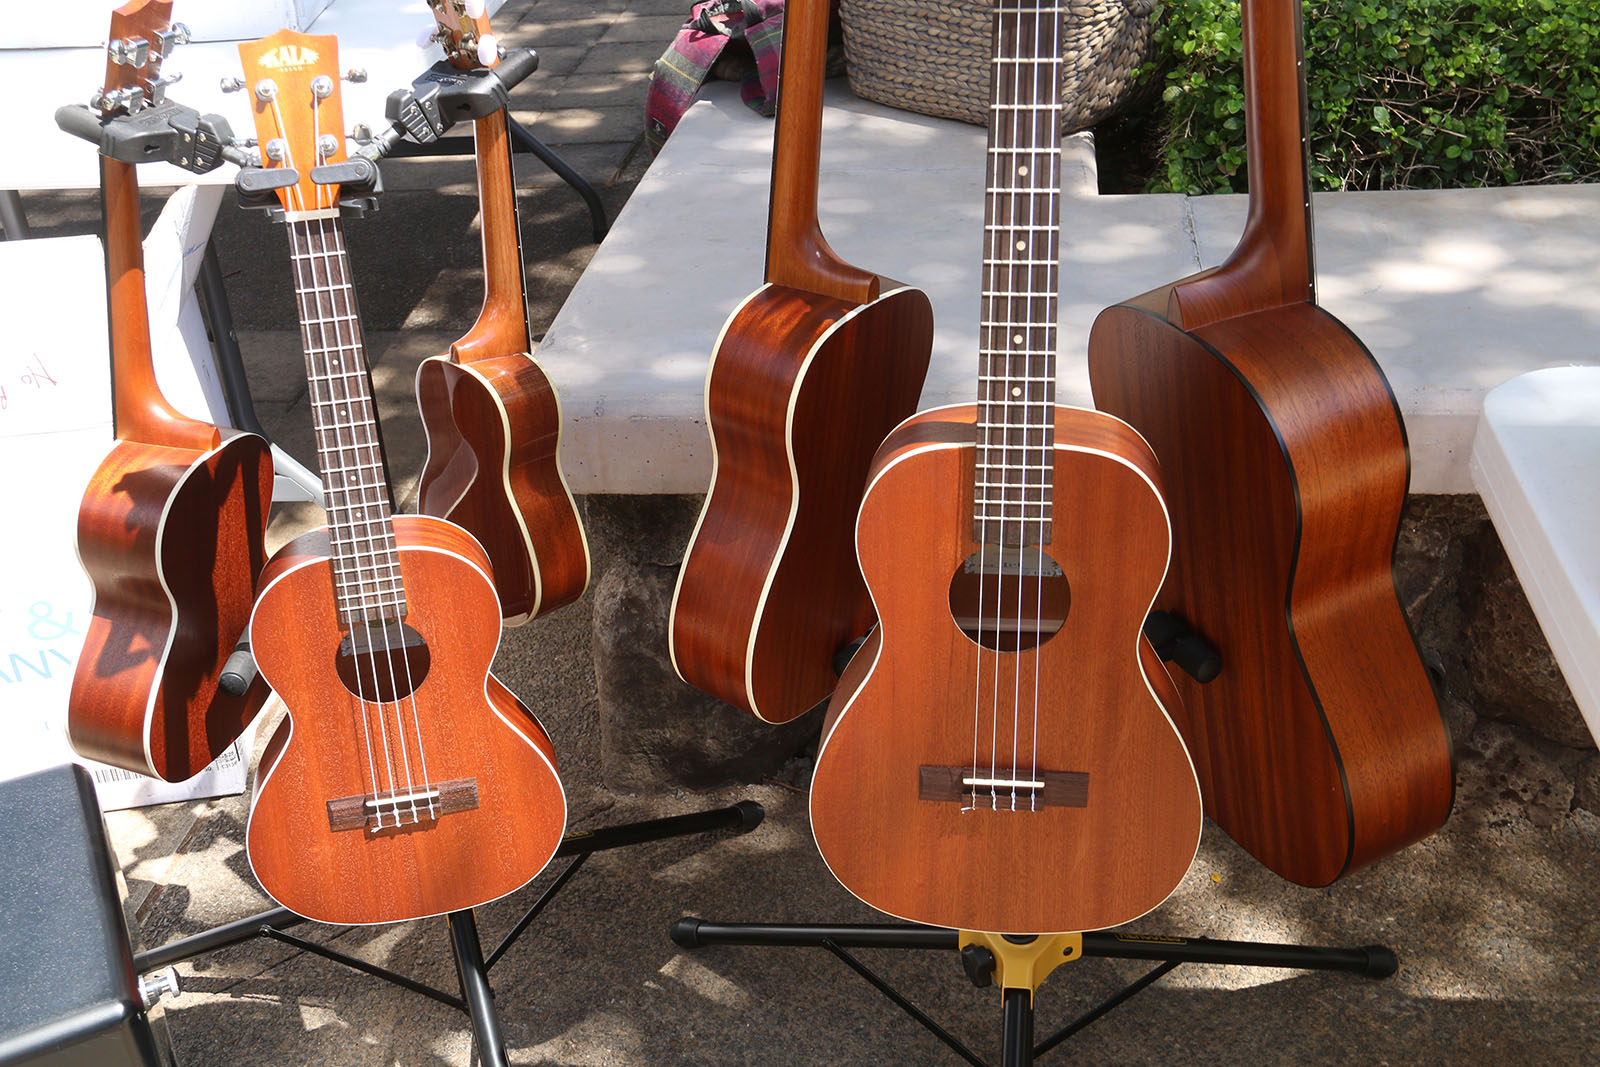 A rack of guitars and ukulele.